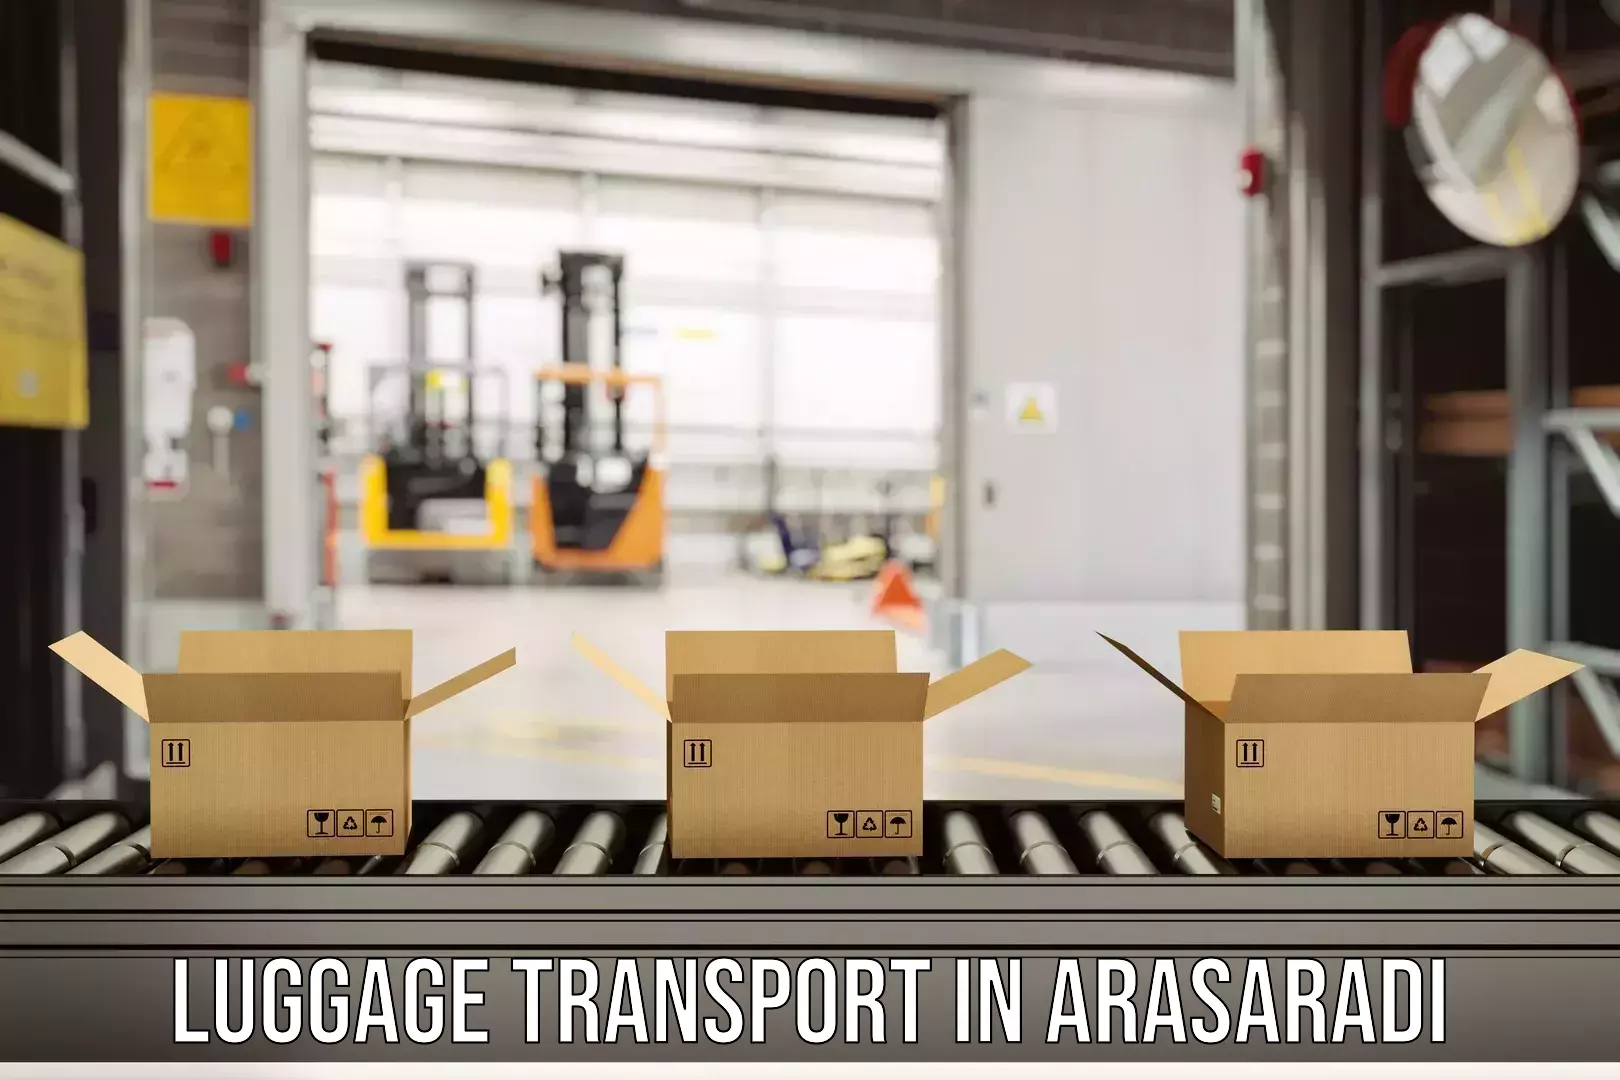 Hassle-free luggage shipping in Arasaradi